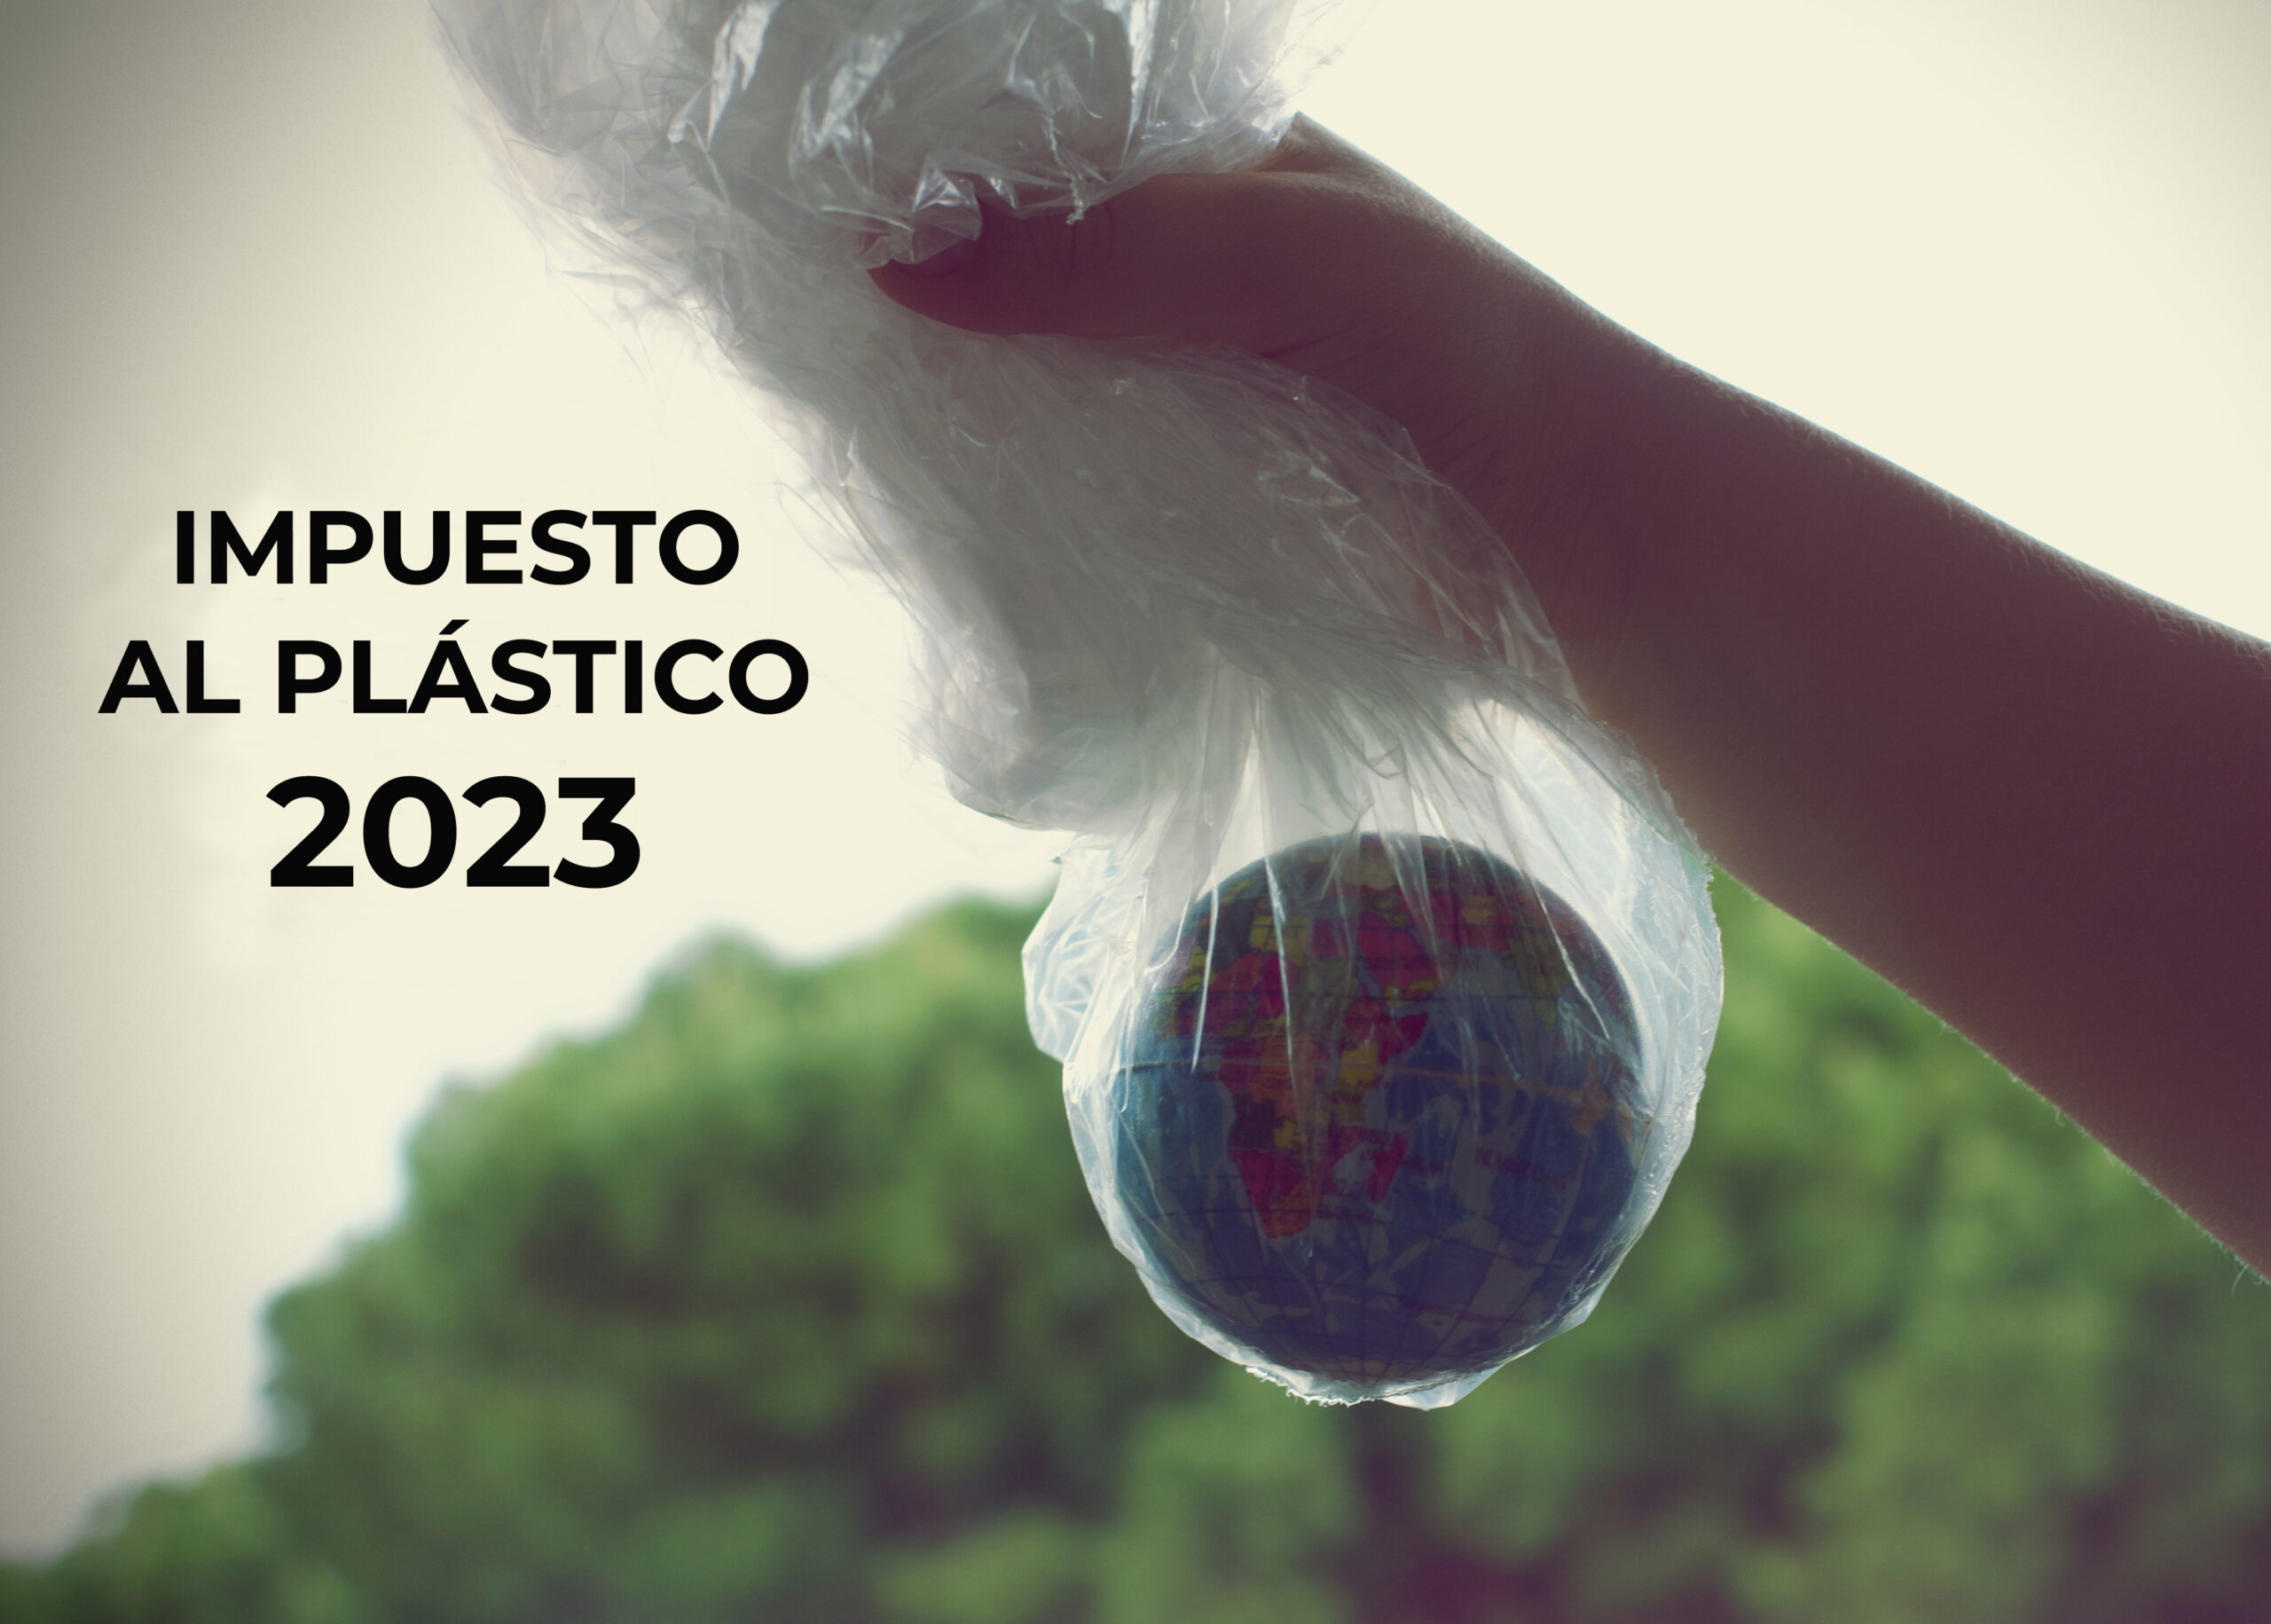 Impuesto al plástico 2023